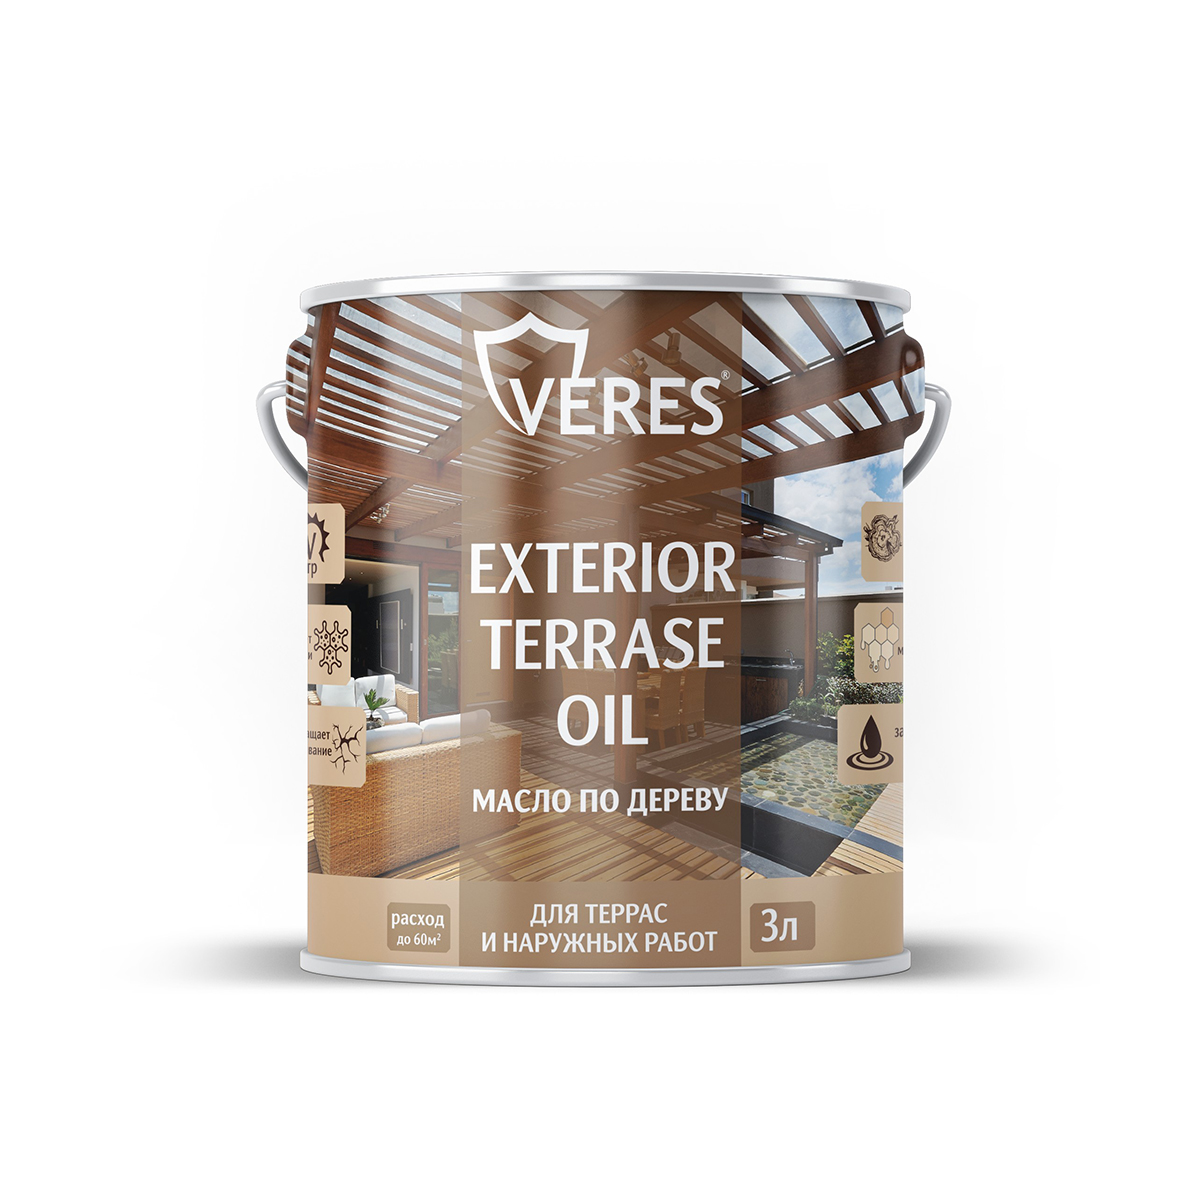 Масло для дерева Veres Exterior Terrase Oil, 3 л, белое масло лазурь для дерева защитное osmo holzschuts ol lasur 702 лиственница шелковисто матовое 2 5 л